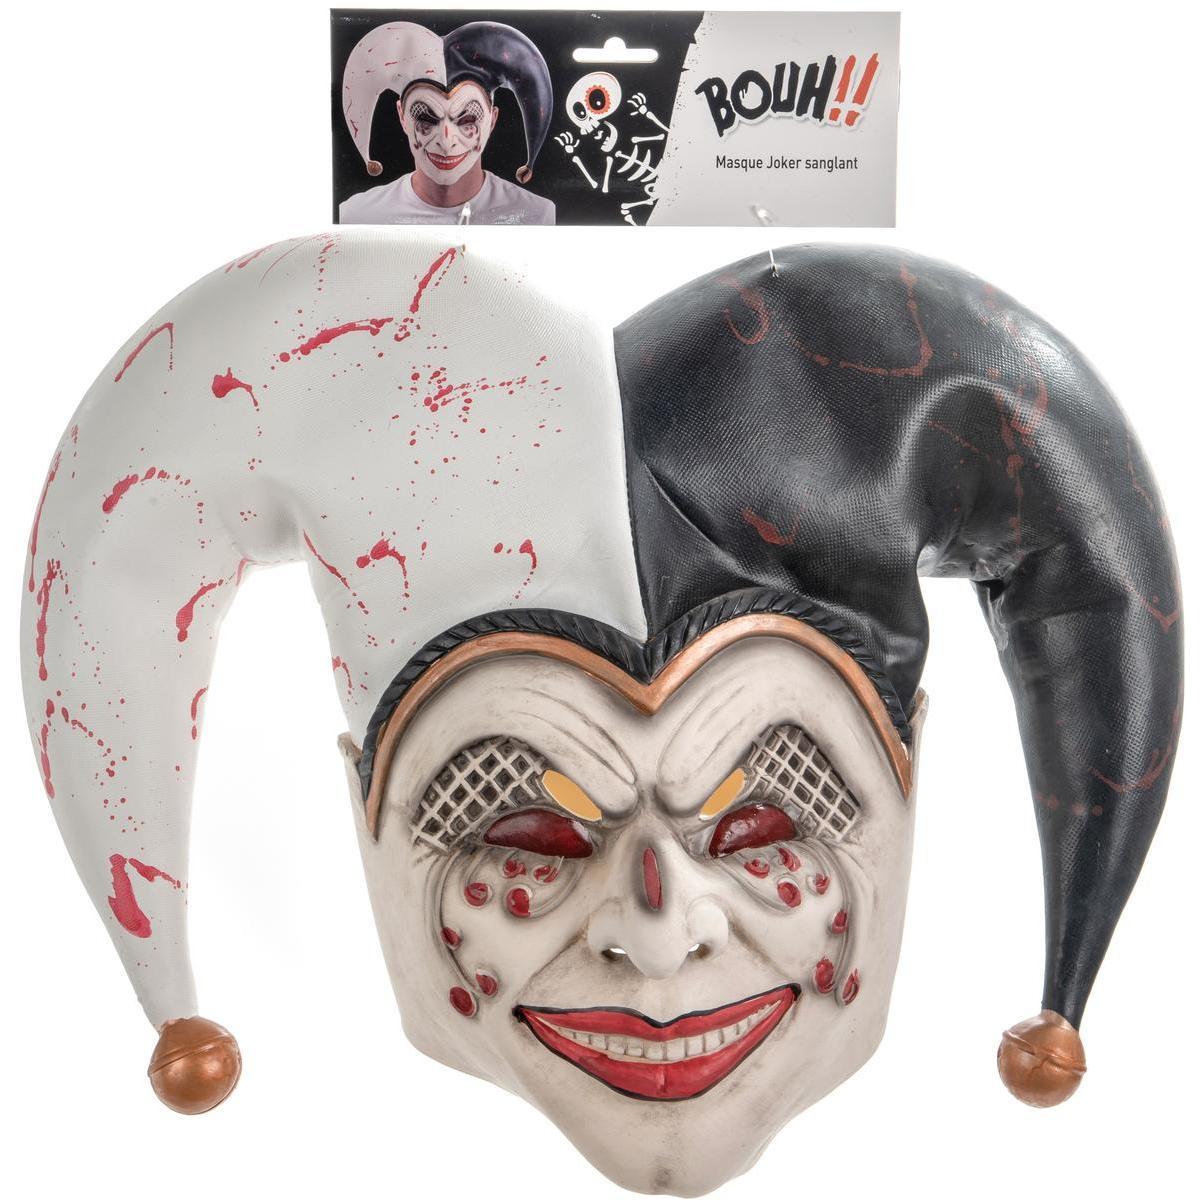 Masque de Joker sanglant - Taille adulte unique - Noir, blanc, rouge